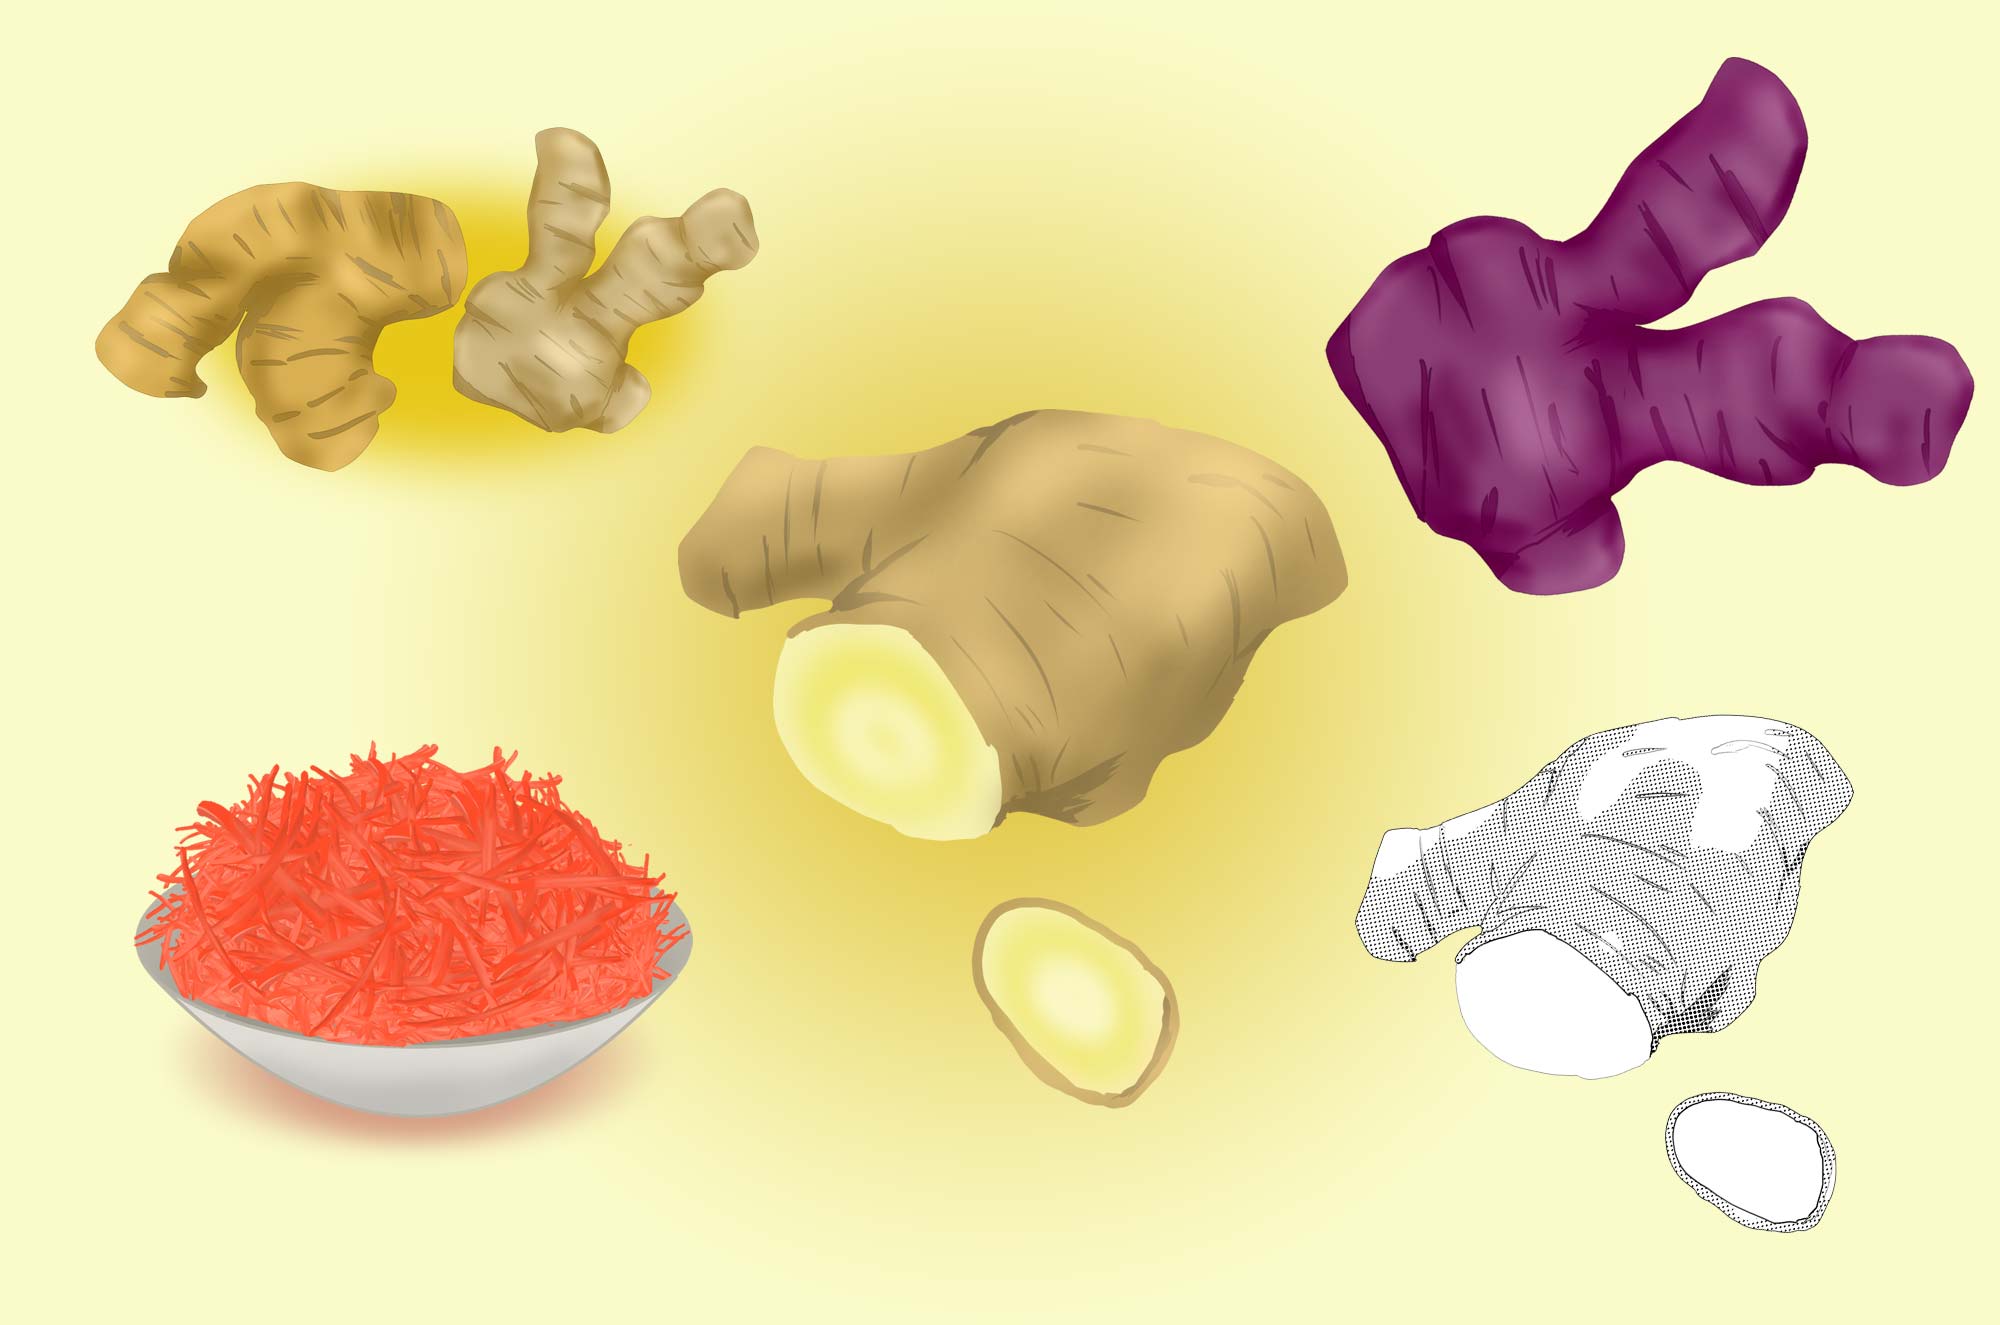 生姜のイラスト素材 - 紅ショウガ・香辛料の野菜